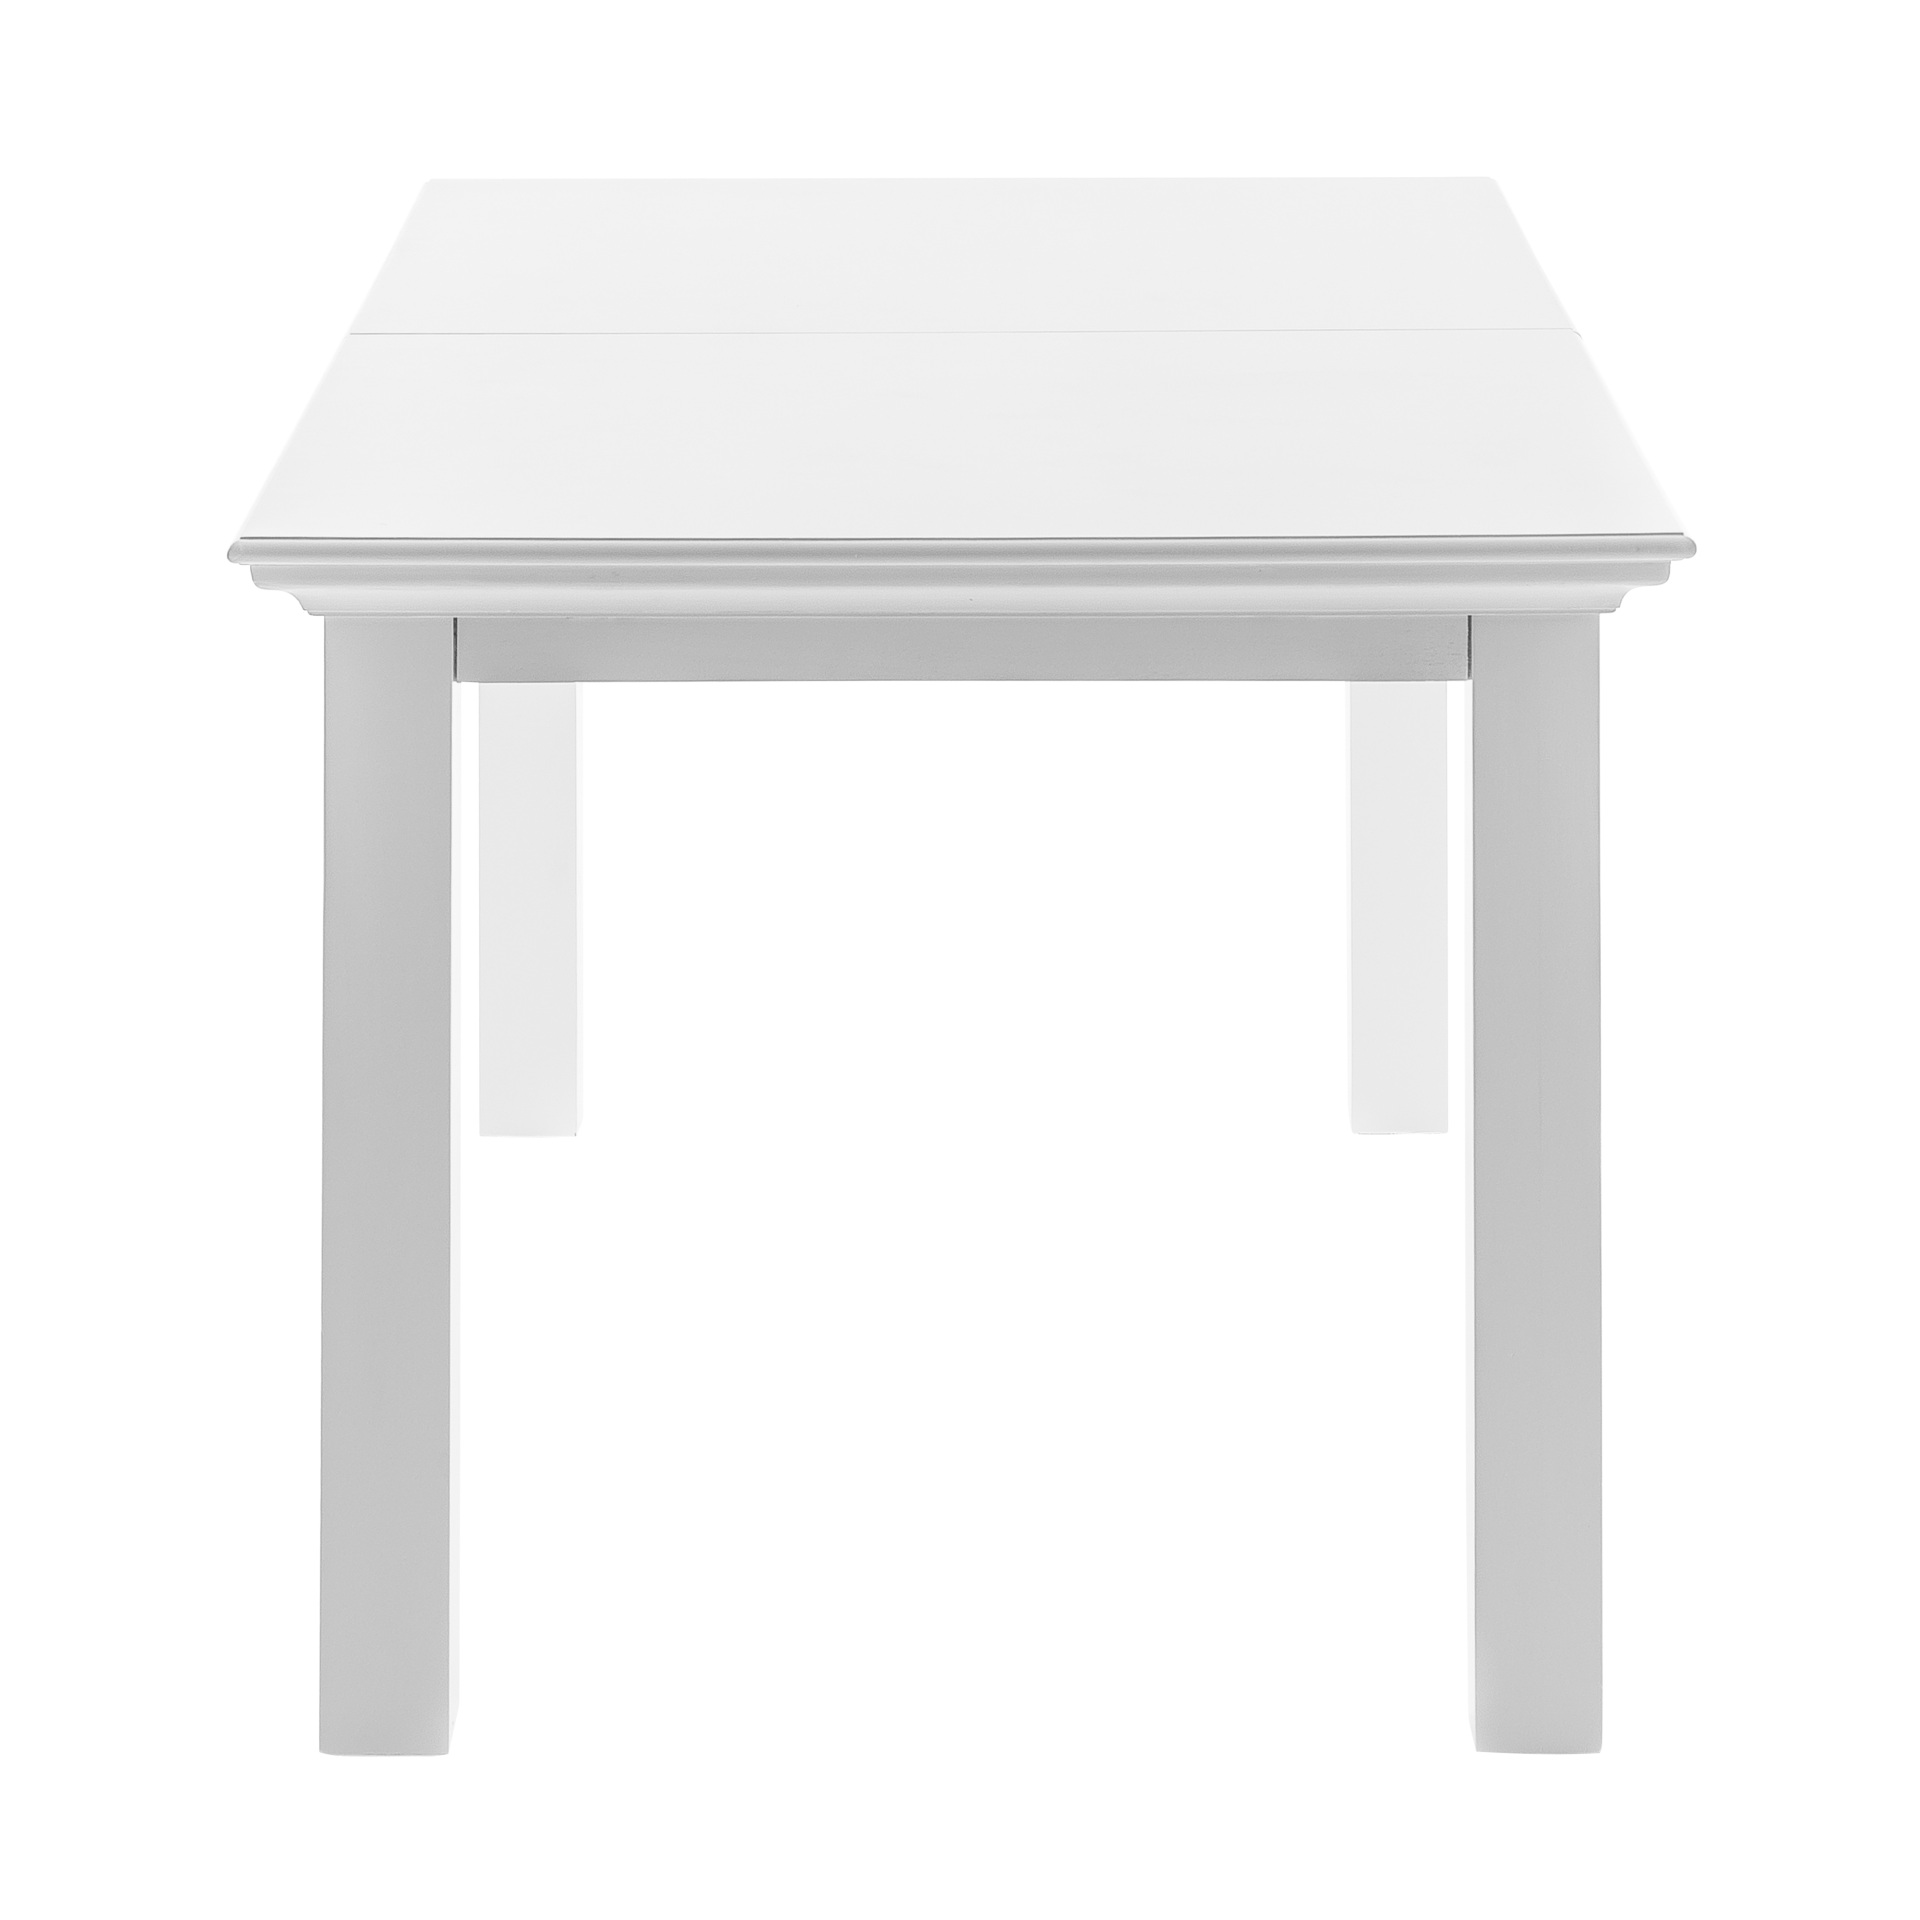 Der Esstisch Halifax überzeugt mit seinem Landhaus Stil. Gefertigt wurde er aus Mahagoni Holz, welches einen weißen Farbton besitzt. Der Tisch ist ausziehbar von einer Breite von 160 cm auf 200 cm.